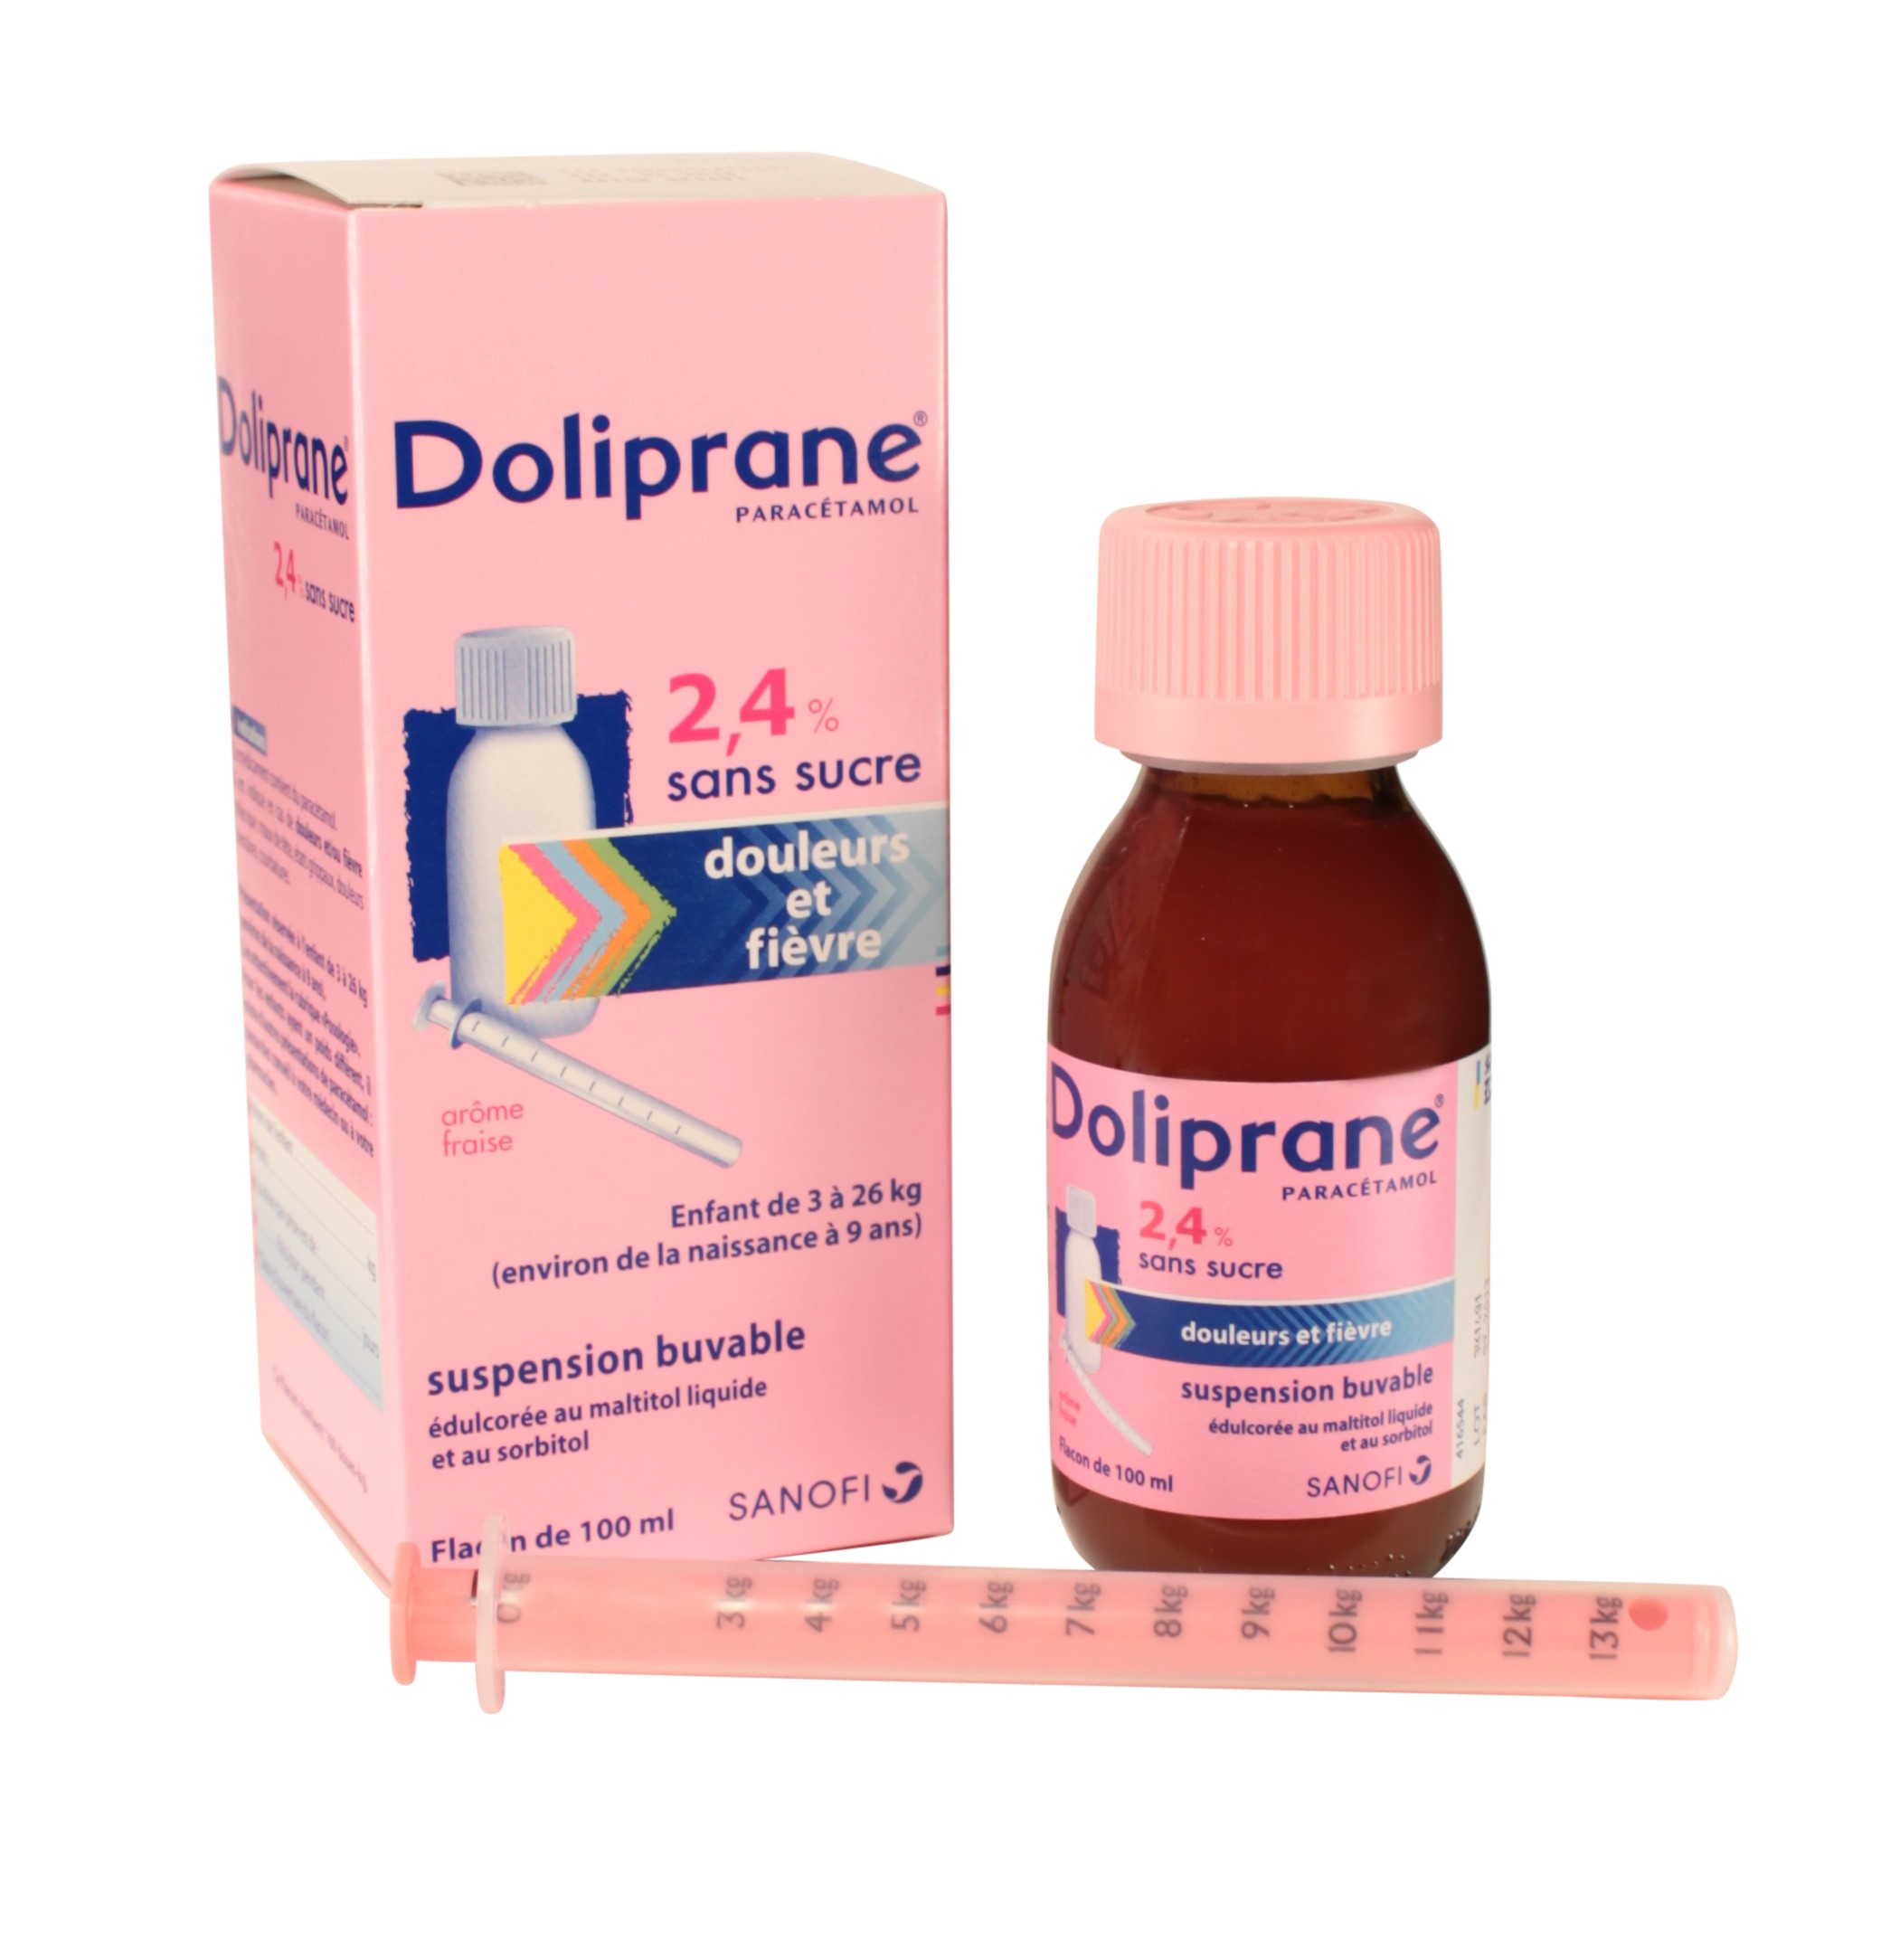 Thuốc hạ sốt Doliprane 2.4% từ Pháp.